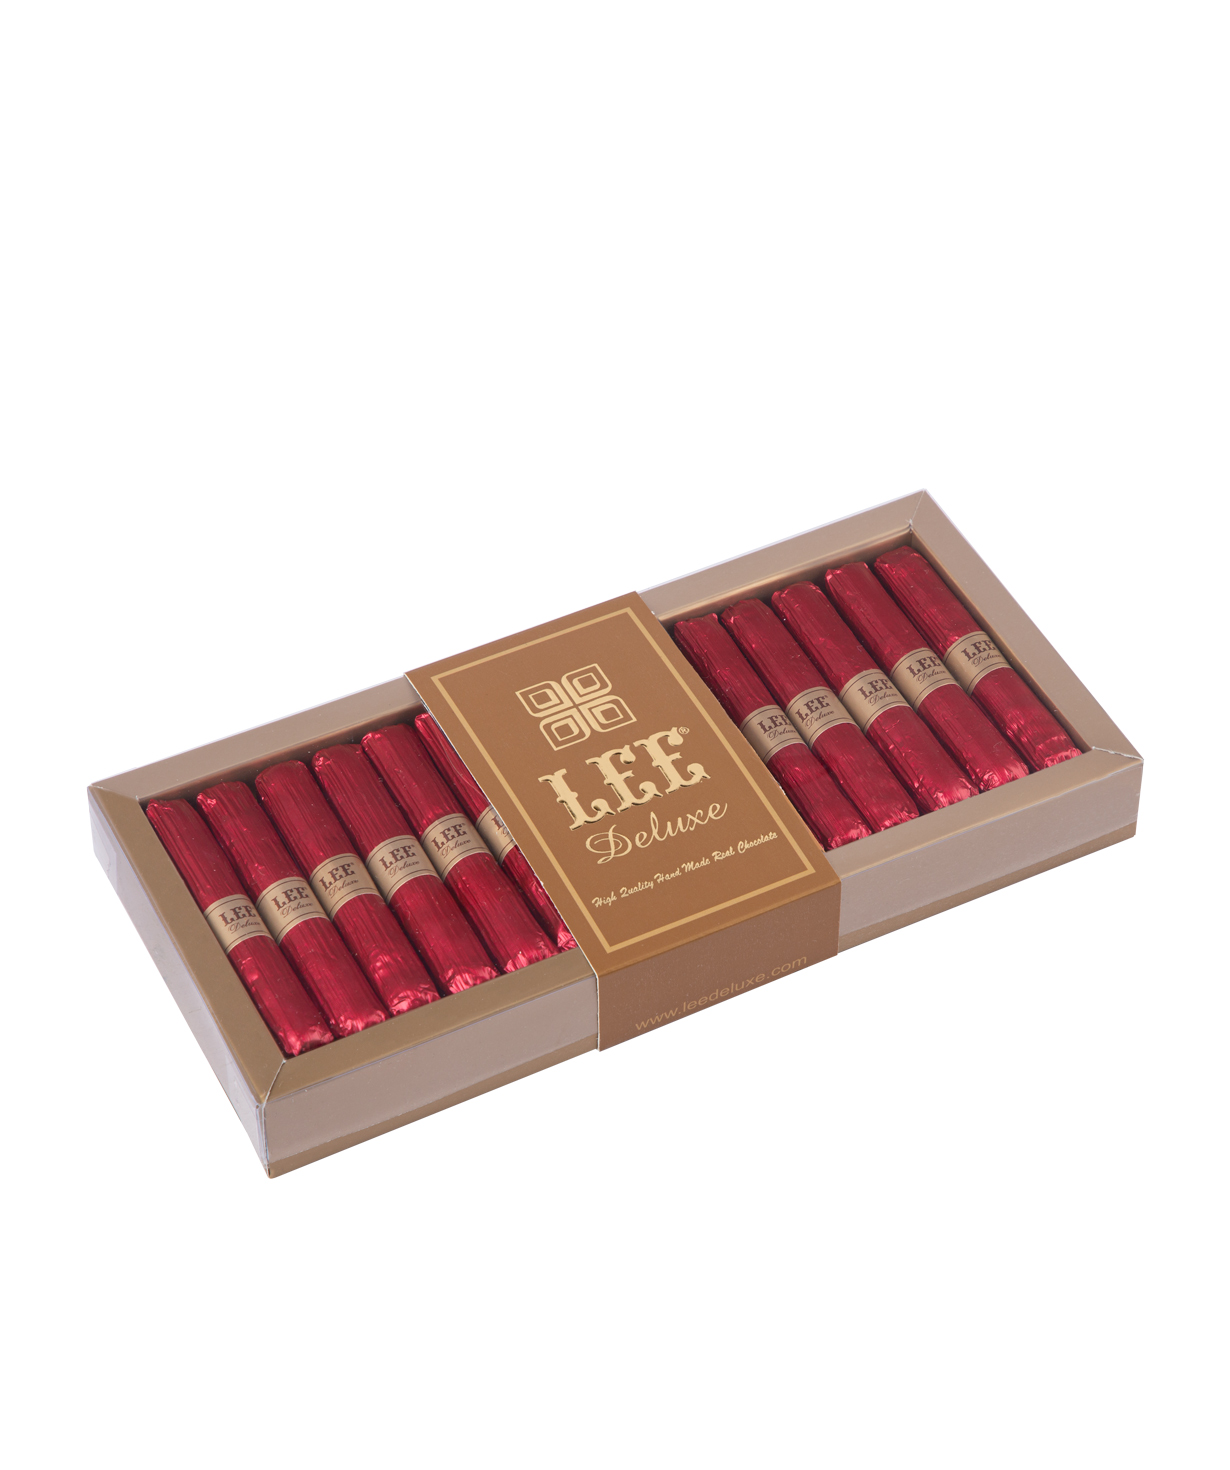 Коллекция `Lee Deluxe` шоколадных конфет, красные 215 гр